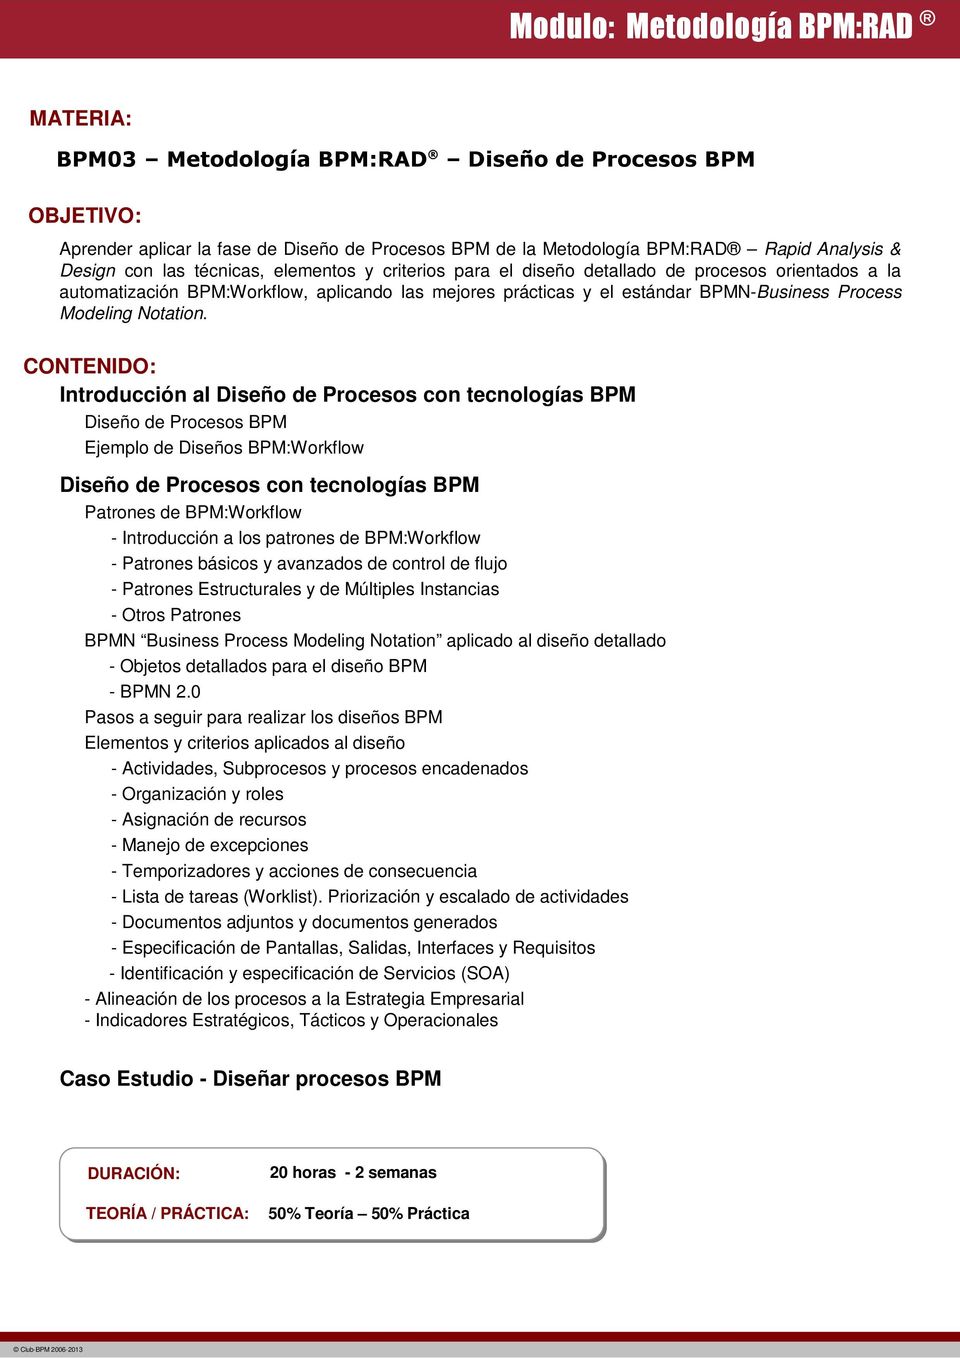 CONTENIDO: Introducción al Diseño de Procesos con tecnologías BPM Diseño de Procesos BPM Ejemplo de Diseños BPM:Workflow Diseño de Procesos con tecnologías BPM Patrones de BPM:Workflow - Introducción